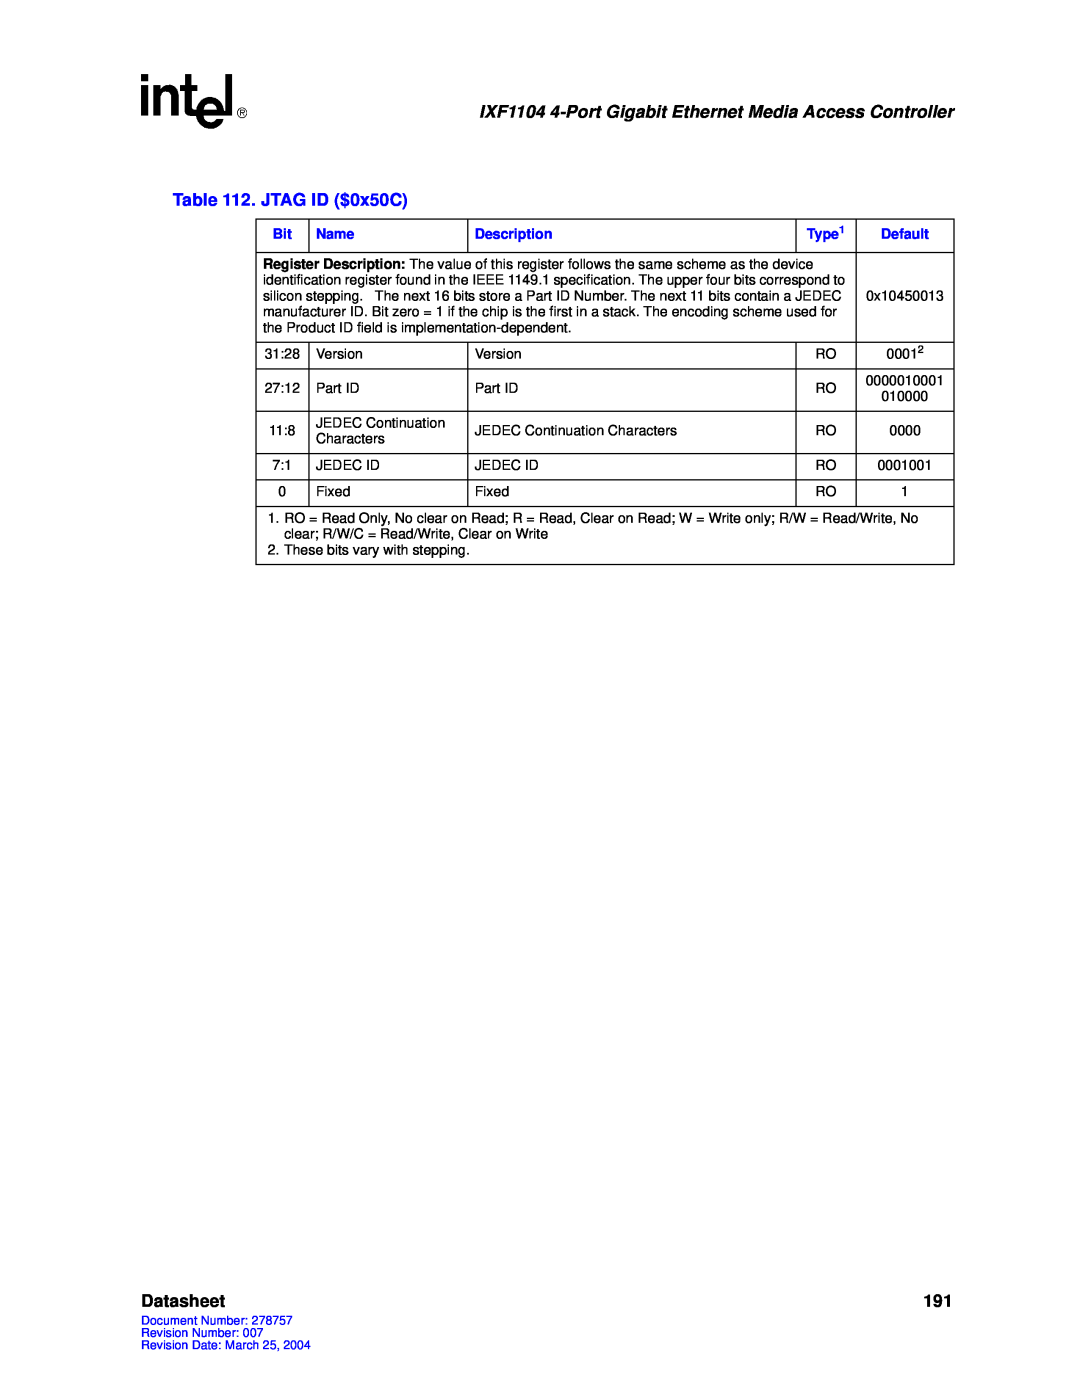 Intel IXF1104 manual JTAG ID $0x50C, Datasheet 